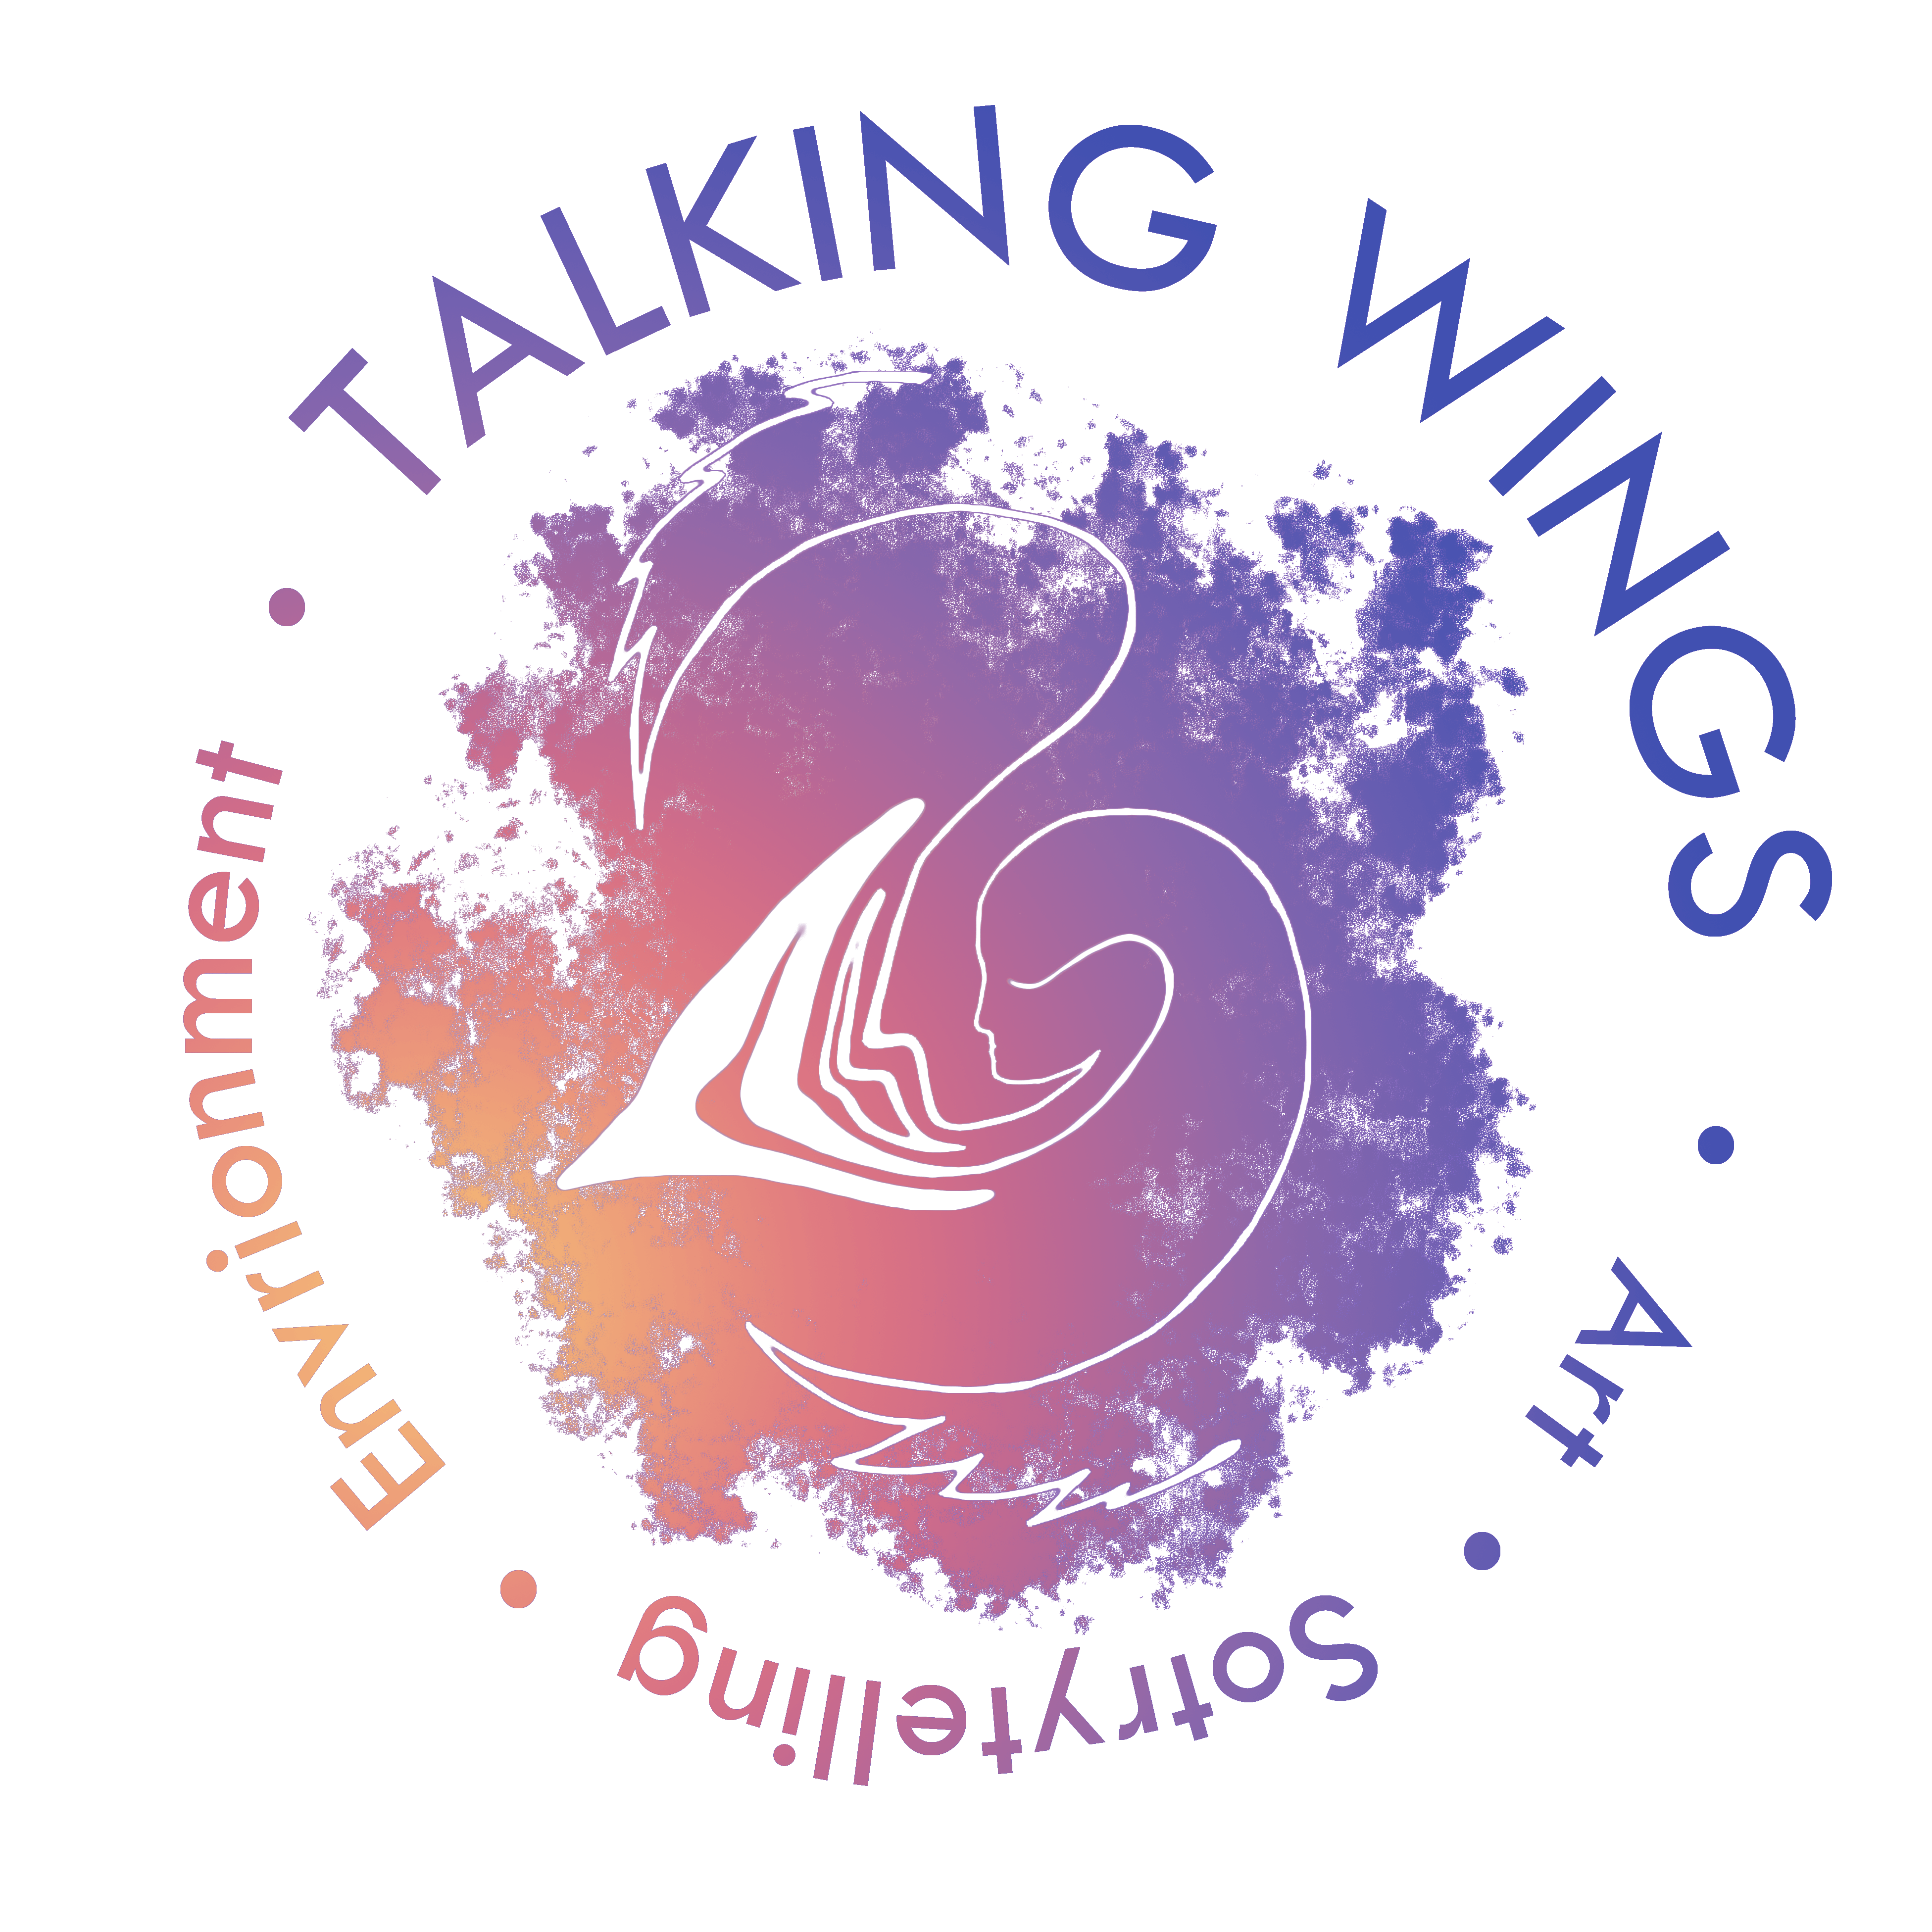 Talking Wings